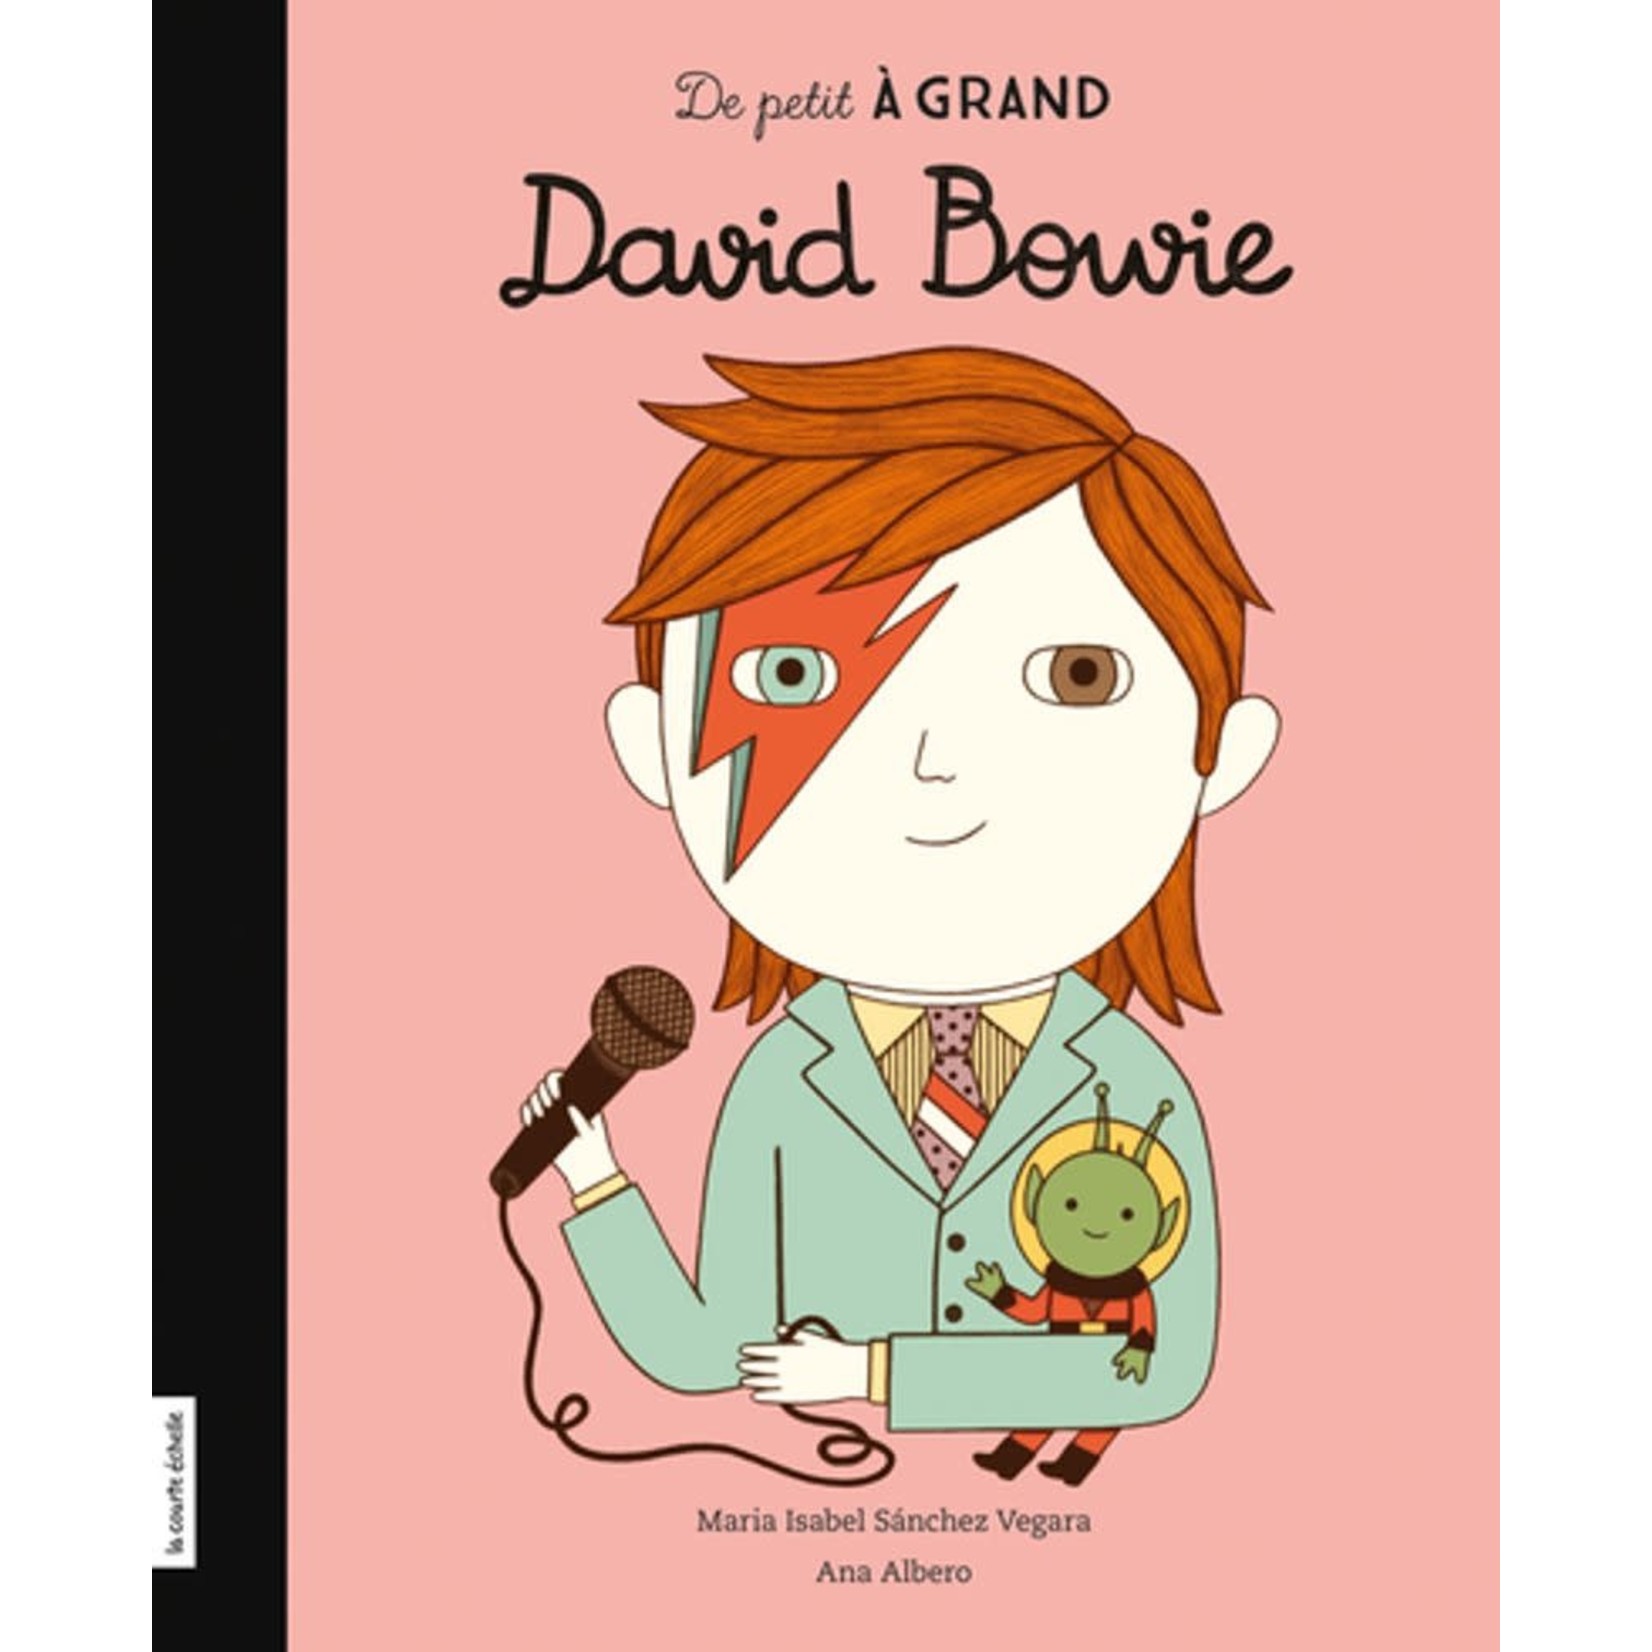 La Courte Échelle (Éditions) LA COURTE ÉCHELLE - De petit à grand : David Bowie (In French)